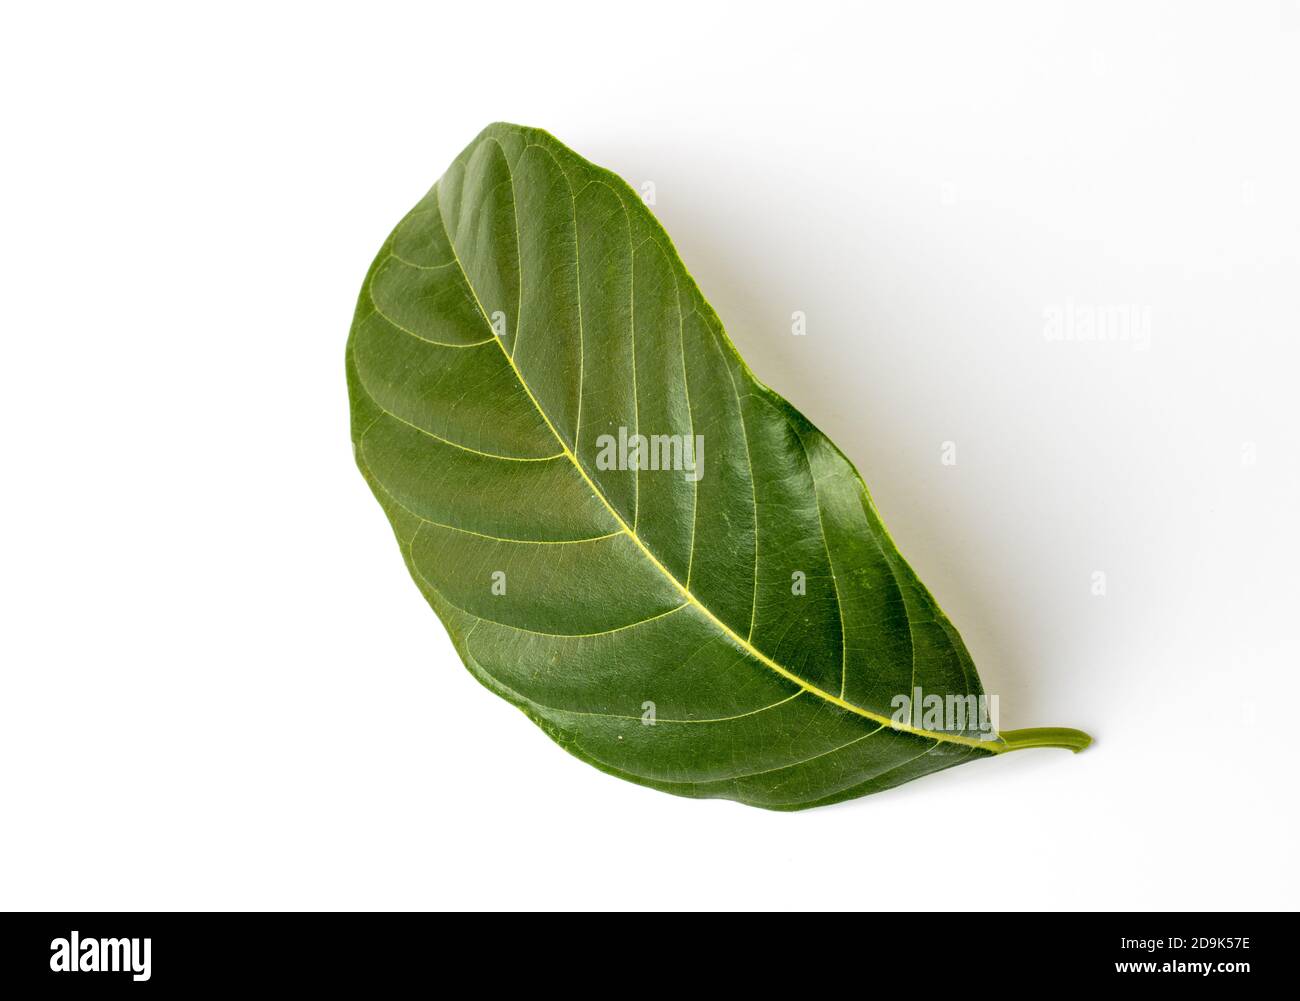 Bend jackfruit leaf isolated on white background Stock Photo